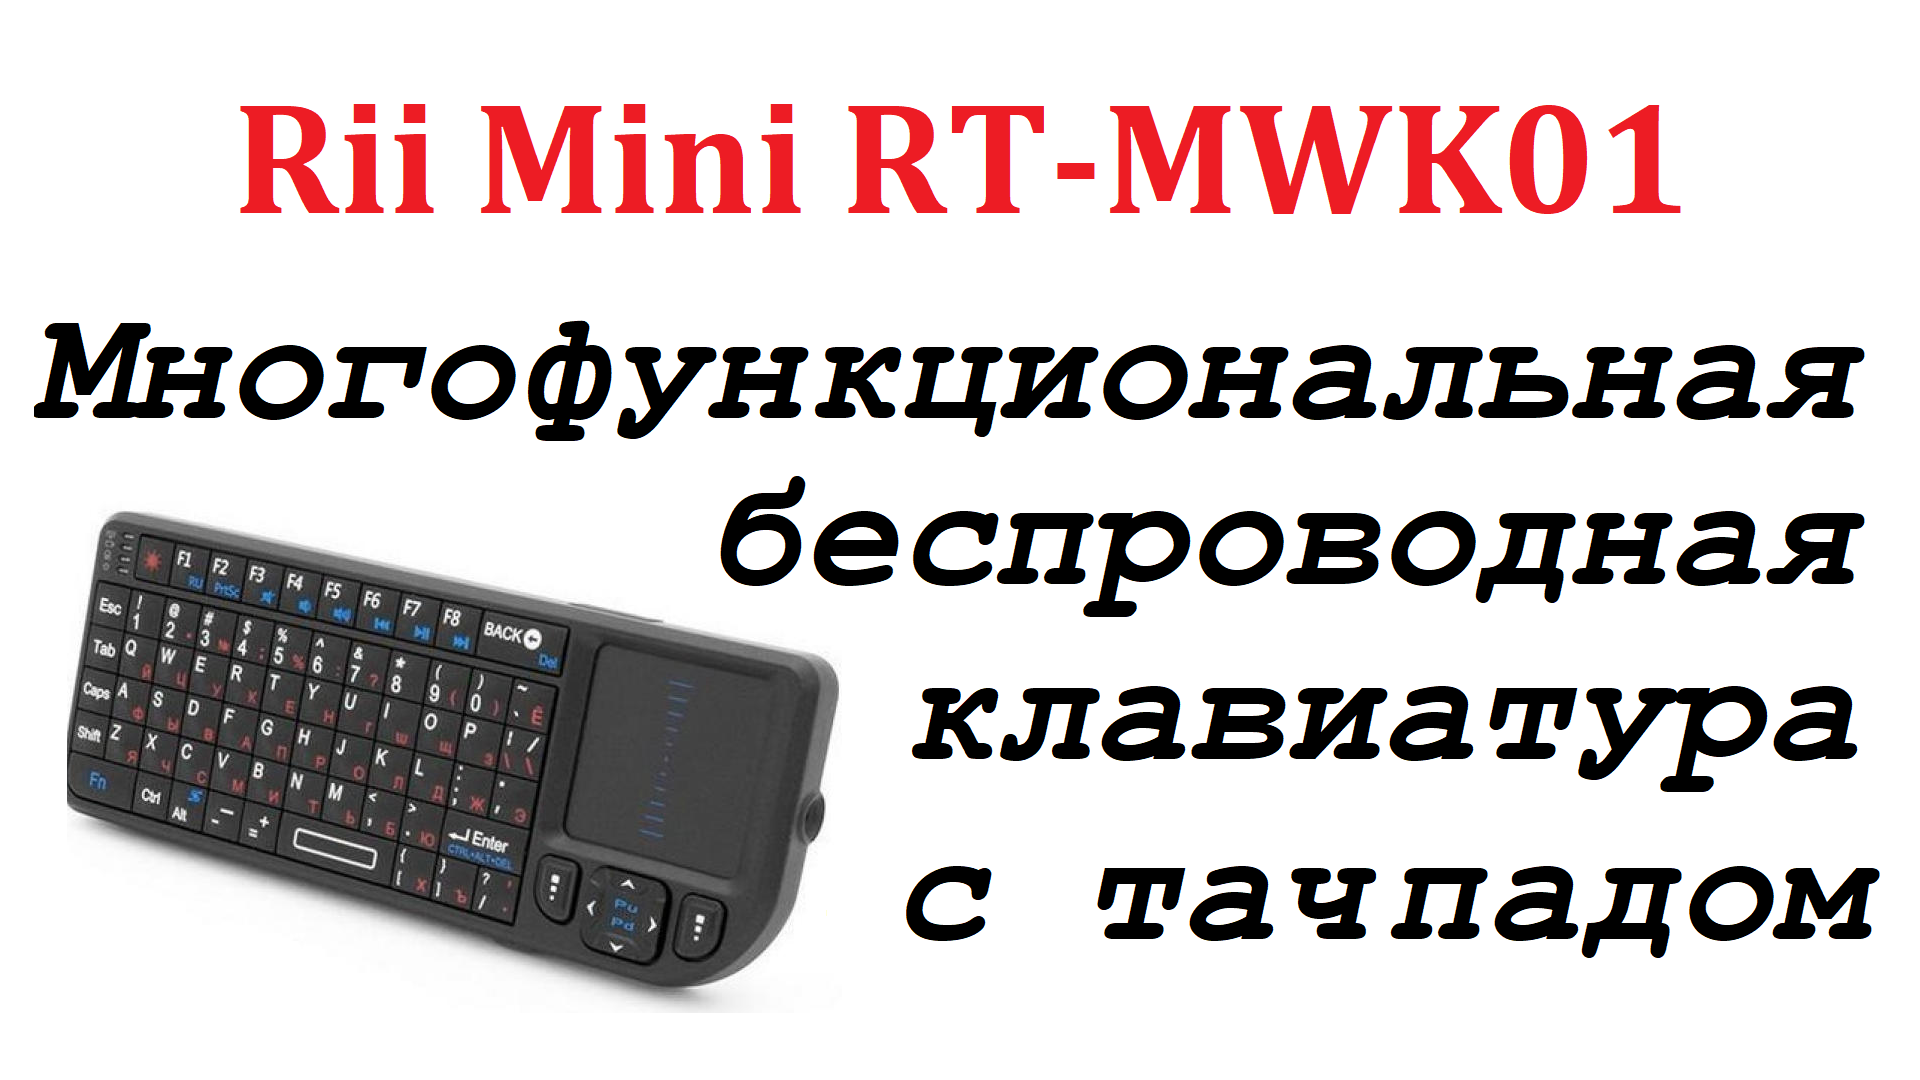 Многофункциональная миниатюрная беспроводная русифицированная клавиатура с тачпадом Rii Mini RT-MWK0